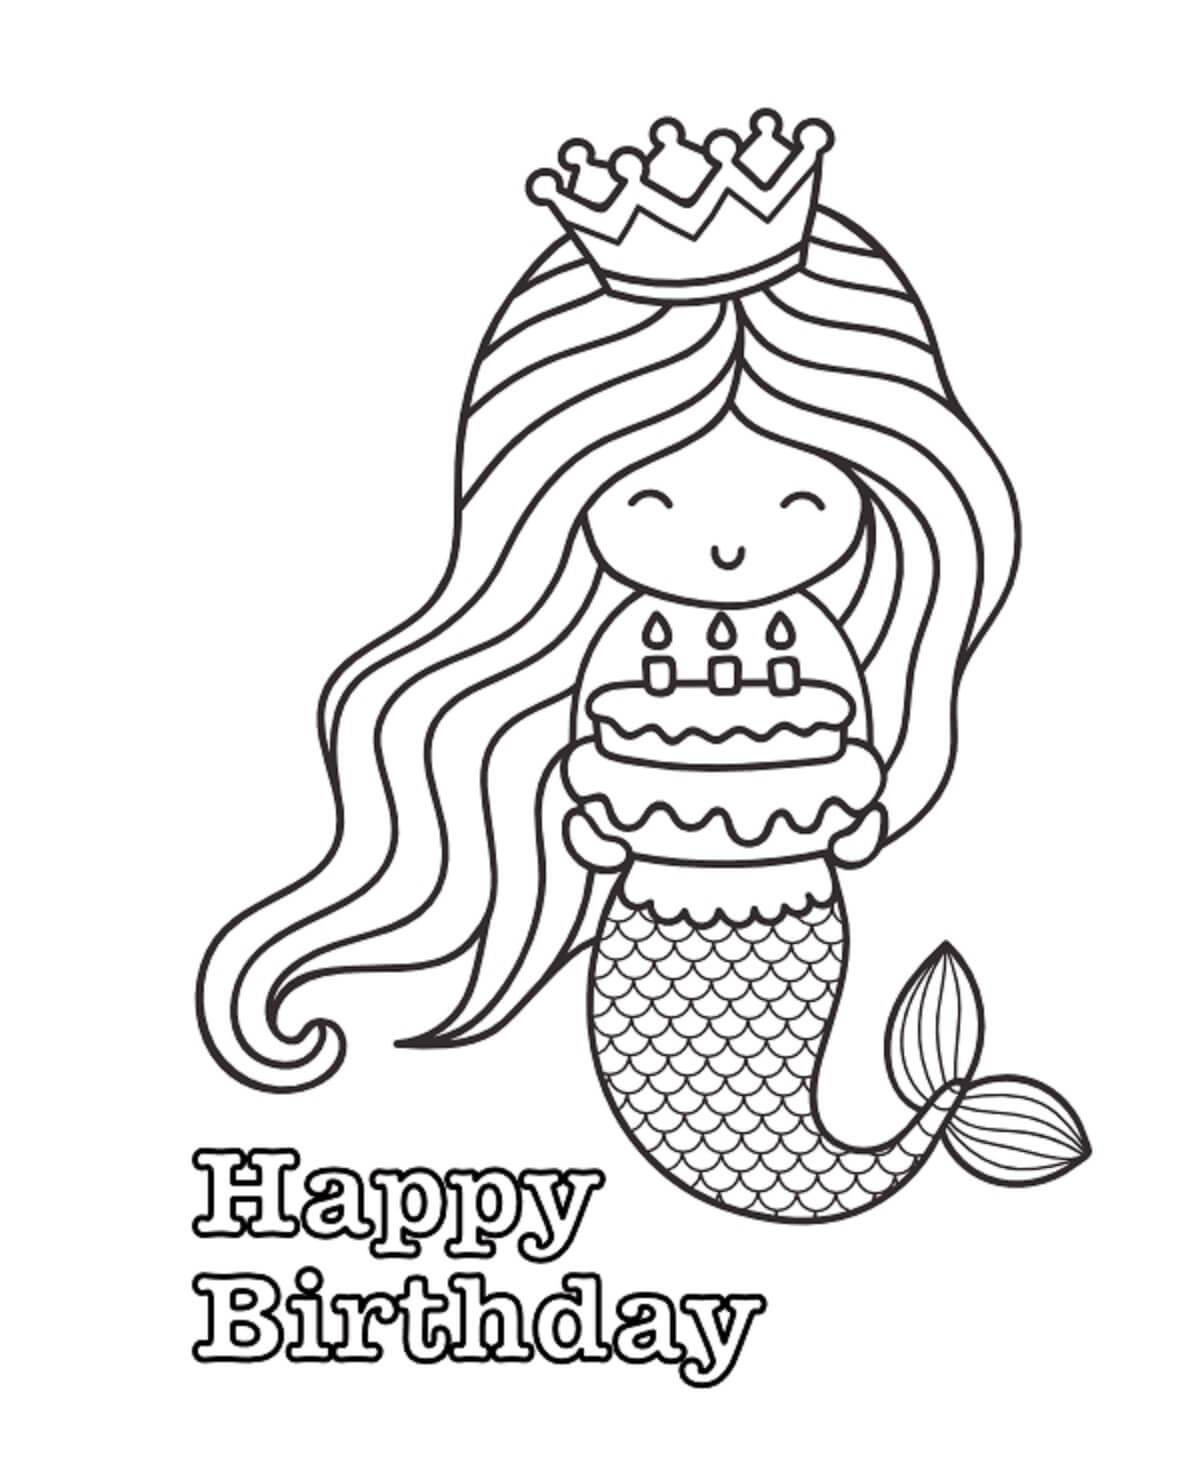 Meerjungfrau, die Geburtstagstorte in alles Gute zum Geburtstag Hält